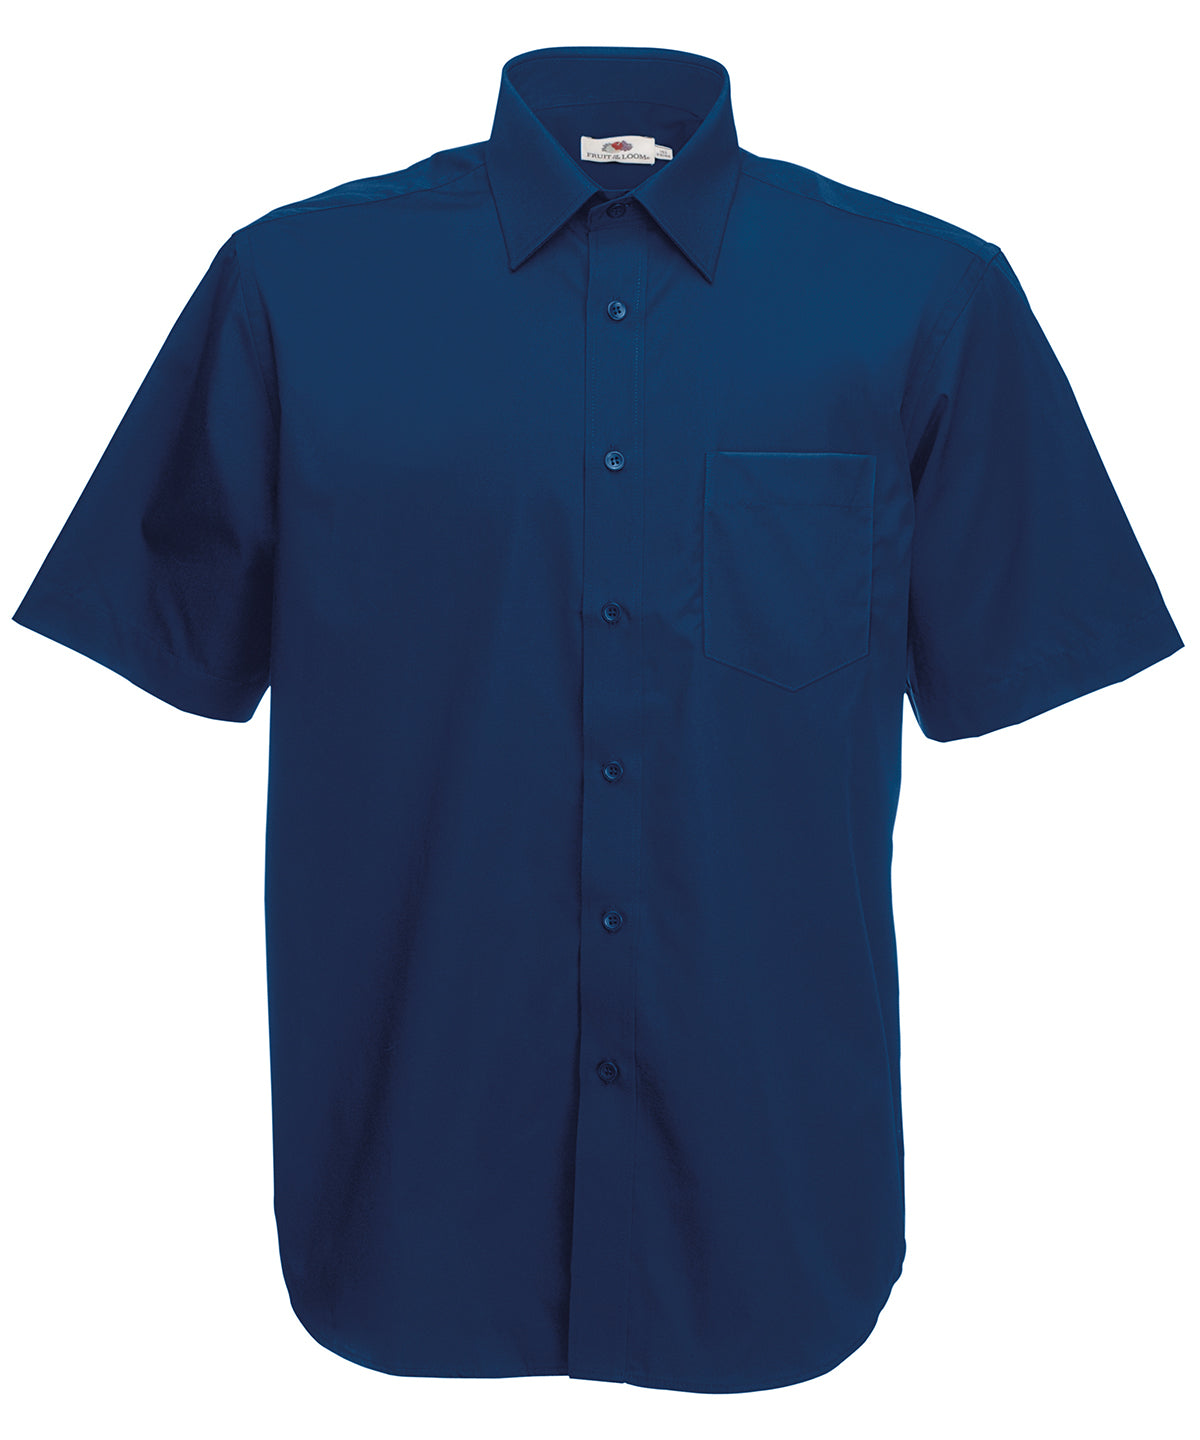 Bolir - Poplin Short Sleeve Shirt